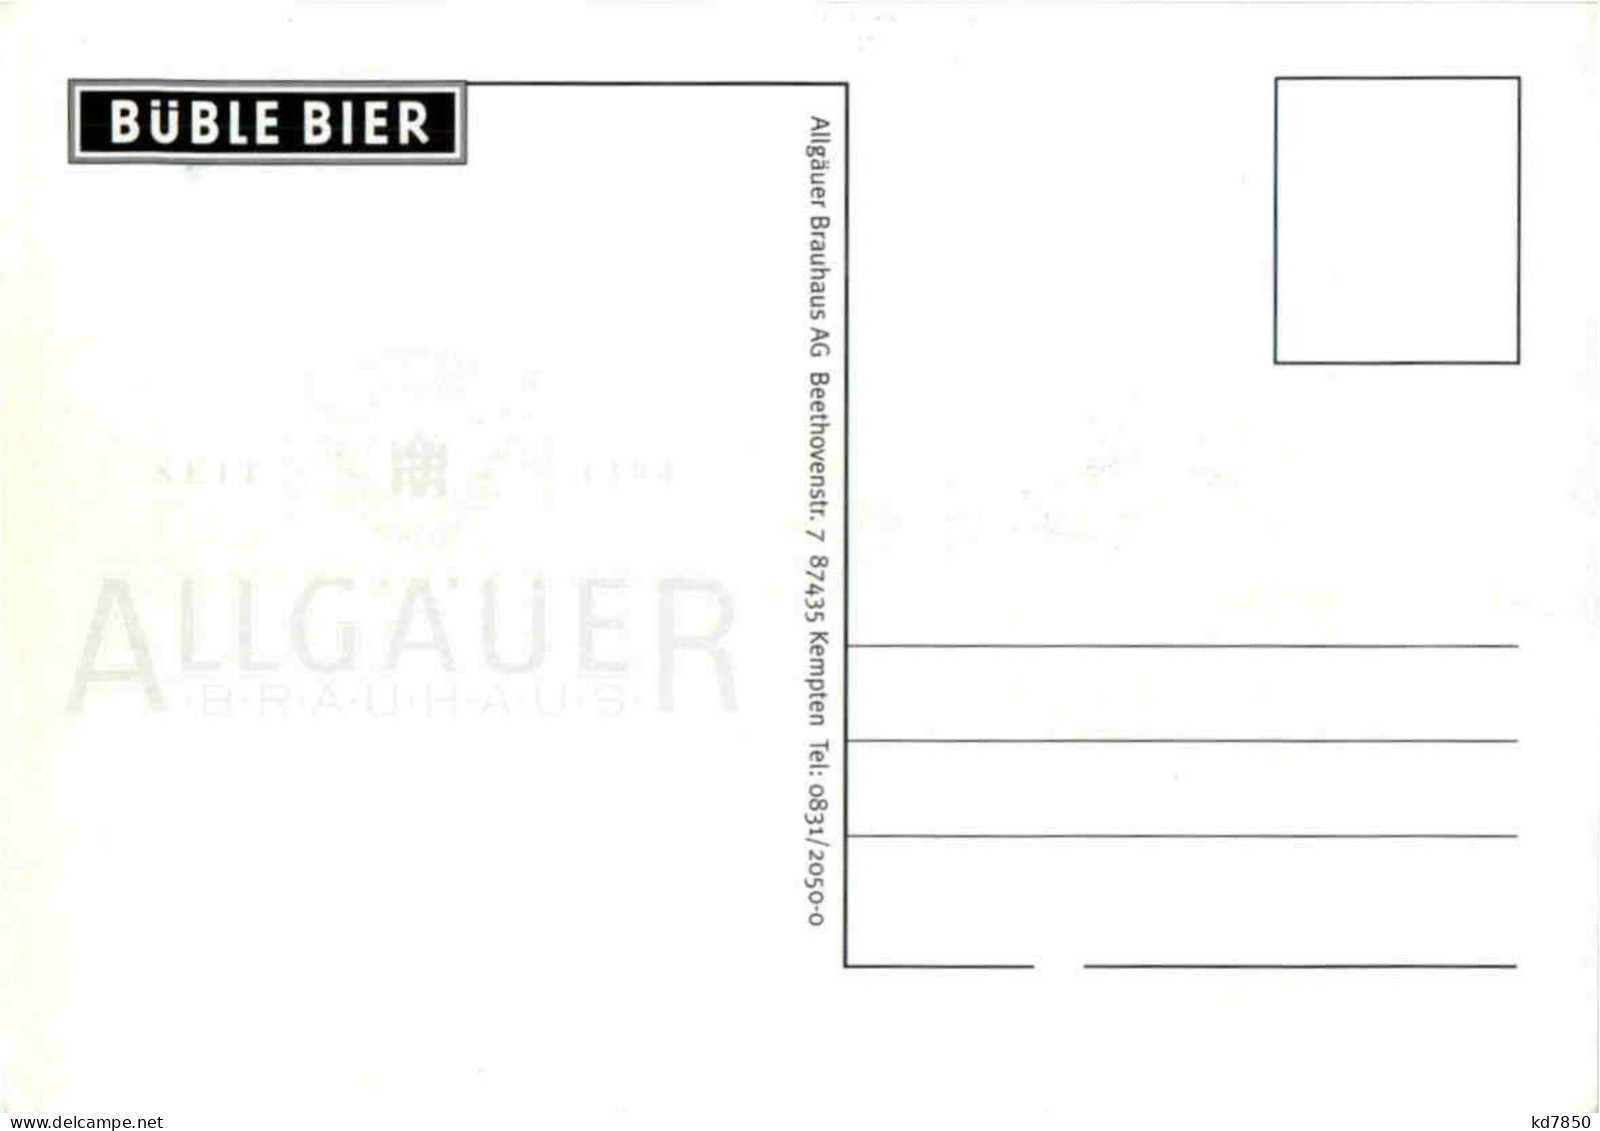 Kempten - Allgäuer Brauhaus - Bier - Beer - Kempten